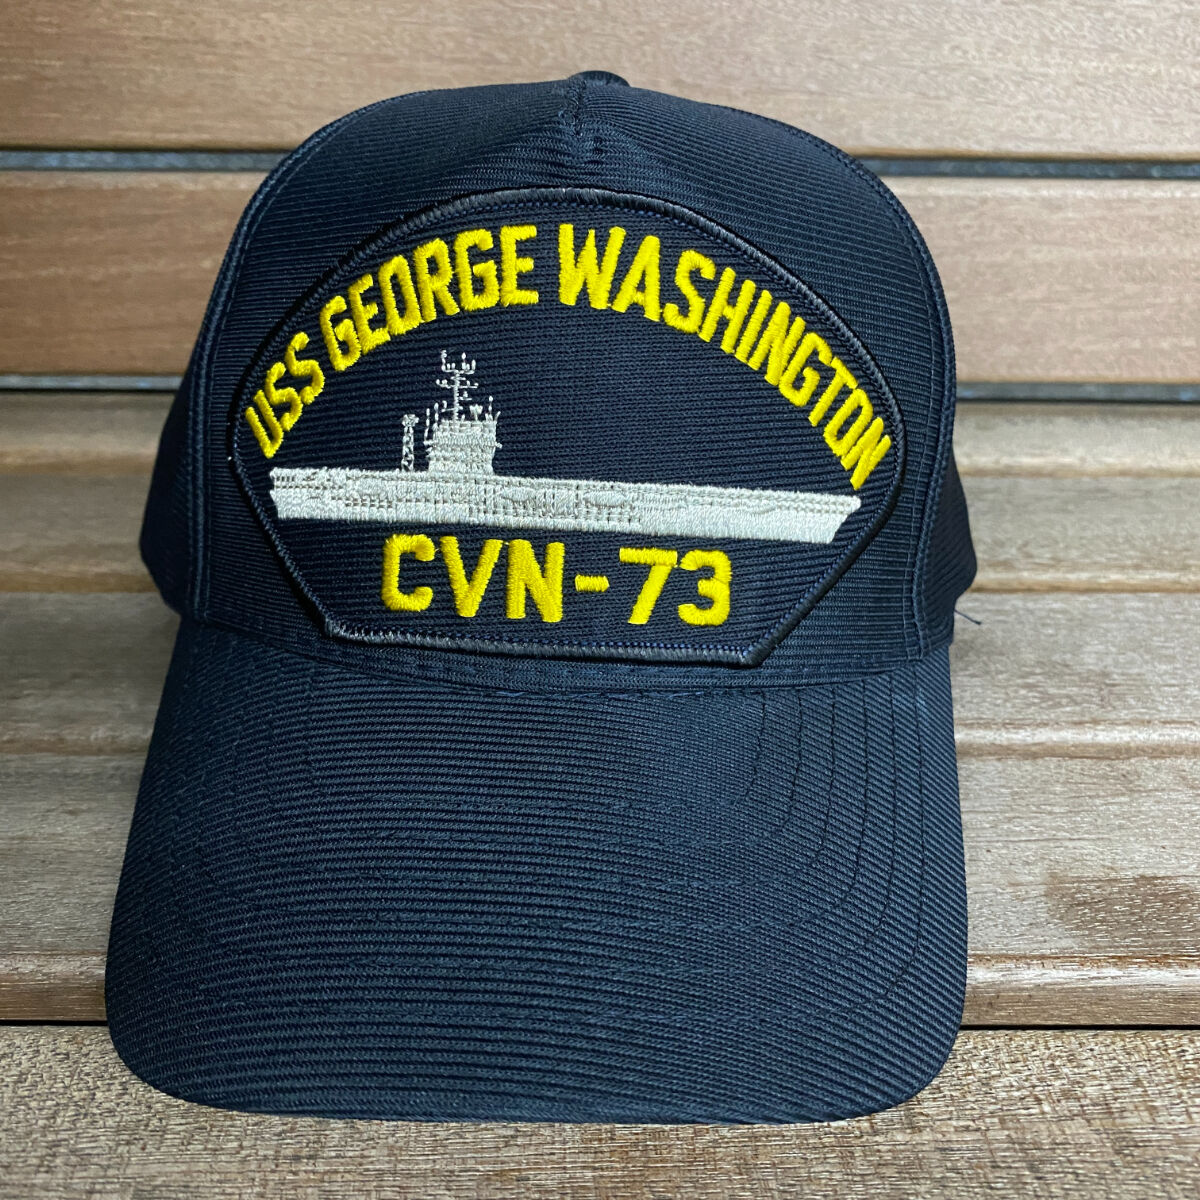 米海軍 空母ジョージワシントン DCTT キャップ